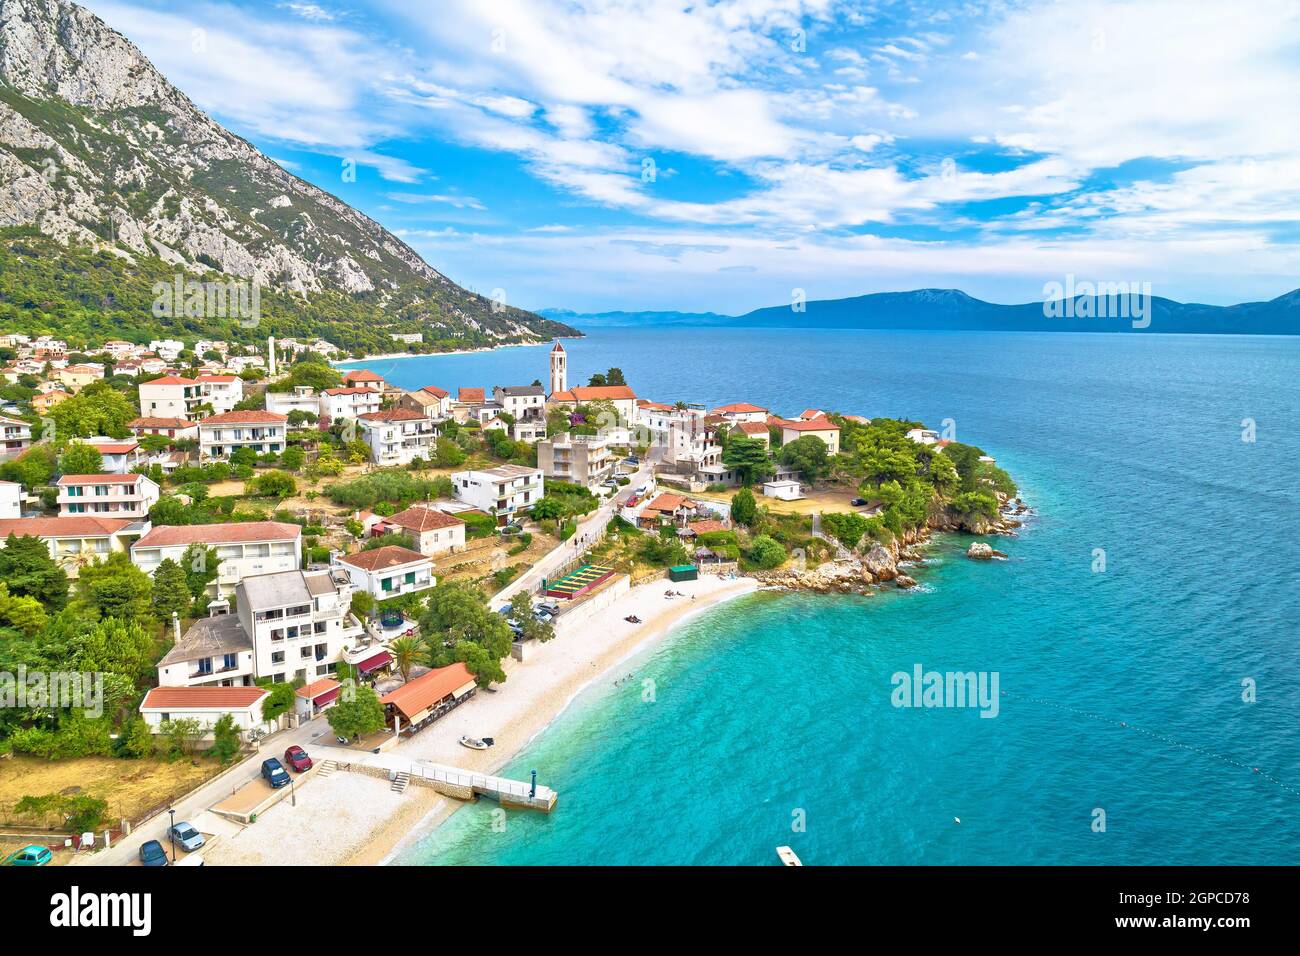 Village de Gradac sur la Riviera de Makarska vue aérienne sur le front de mer, région de Dalmatie en Croatie Banque D'Images